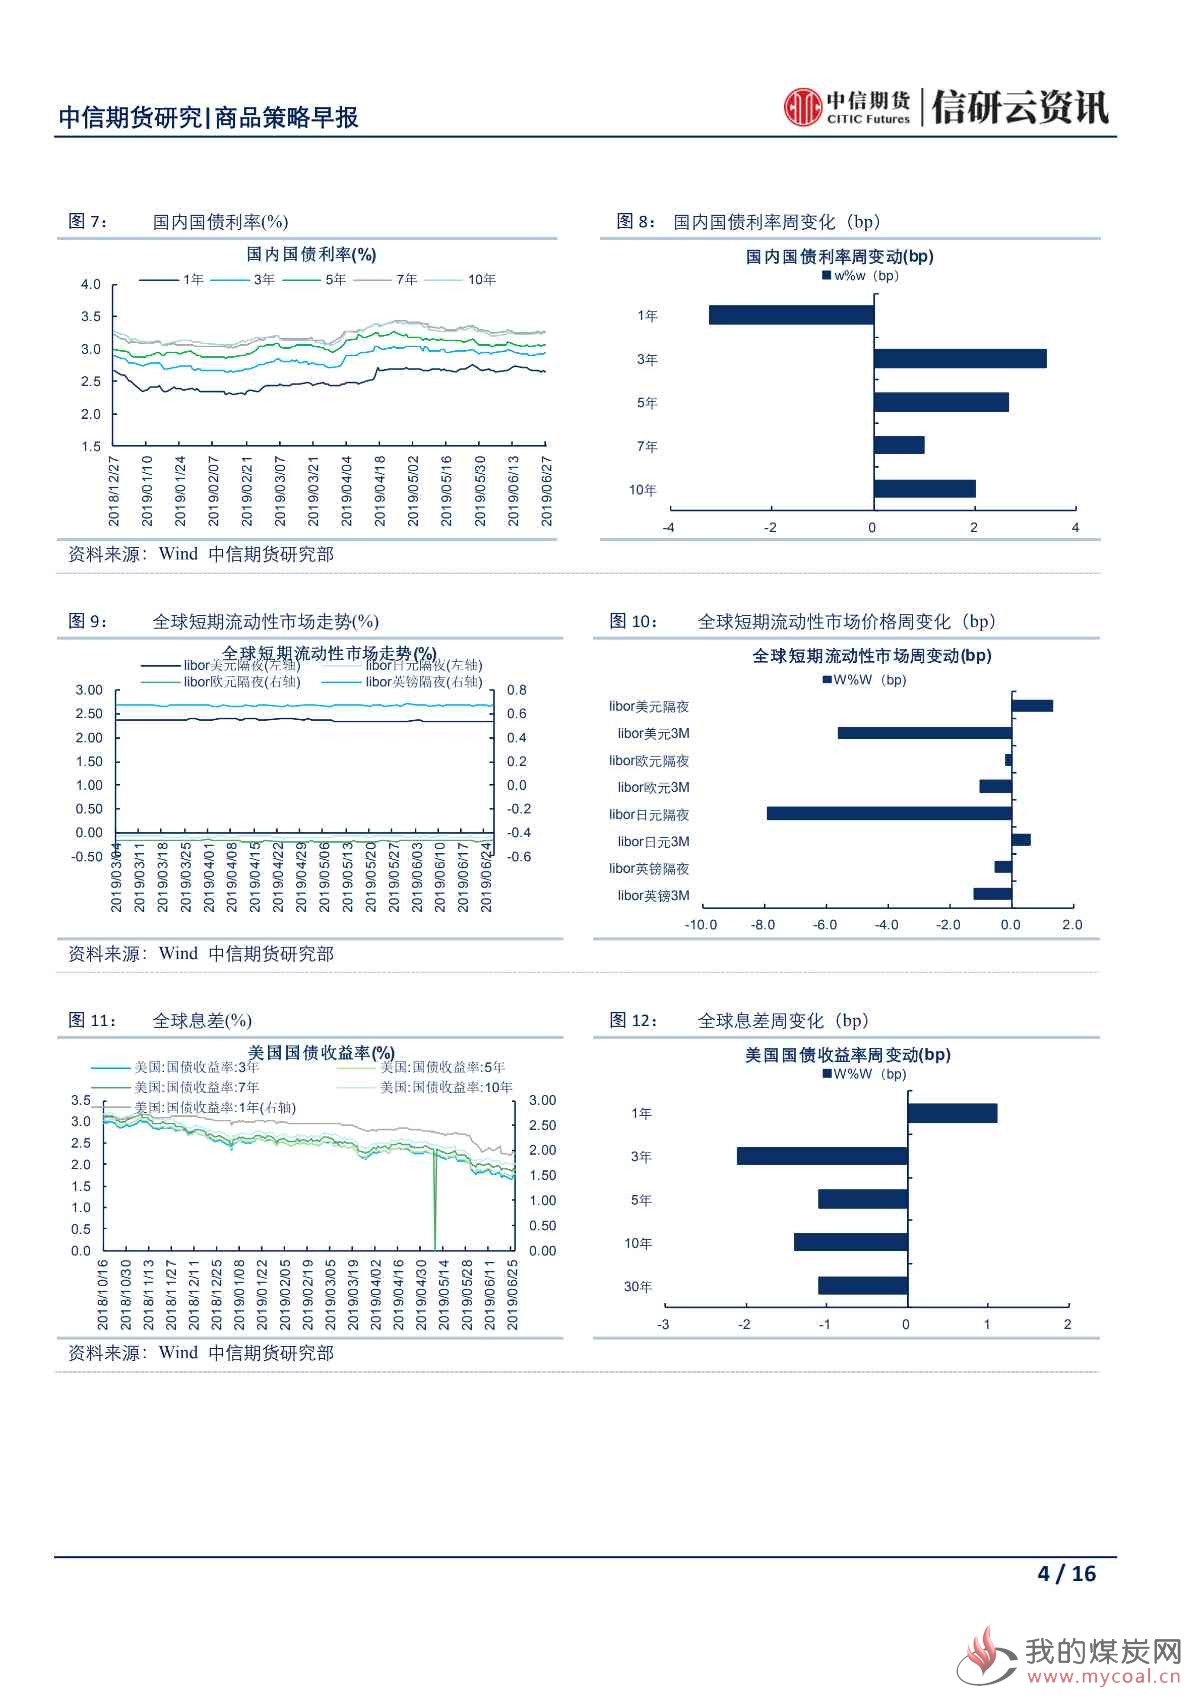 【中信期货宏观】央行再次强调稳健货币政策 市场密切关注日本G20峰会——日报20190628_03